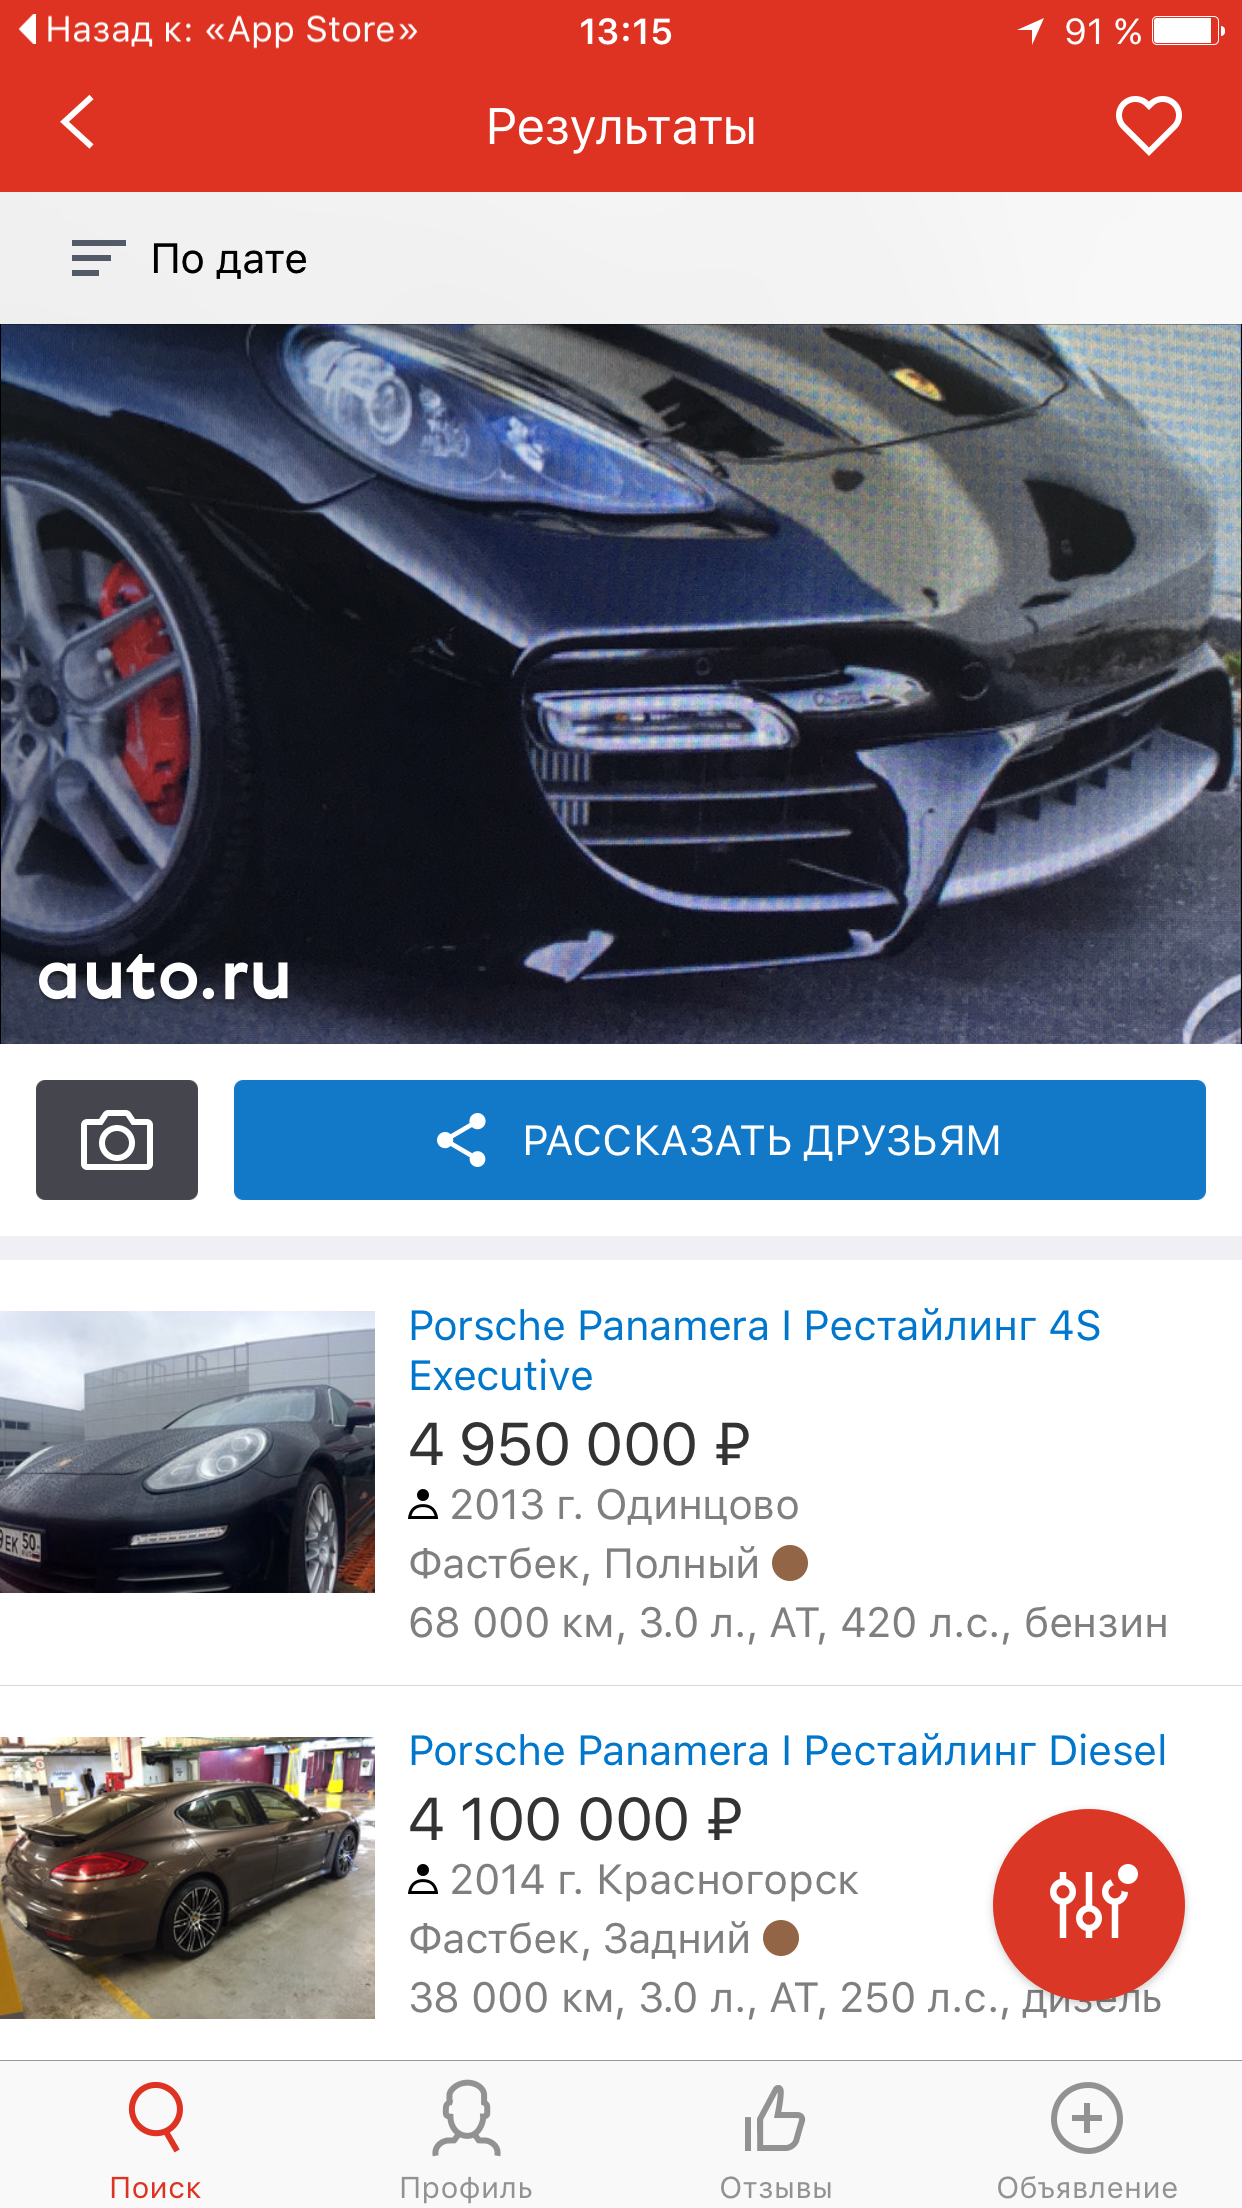 Сервис Авто.ру научился определять автомобили по фотографии